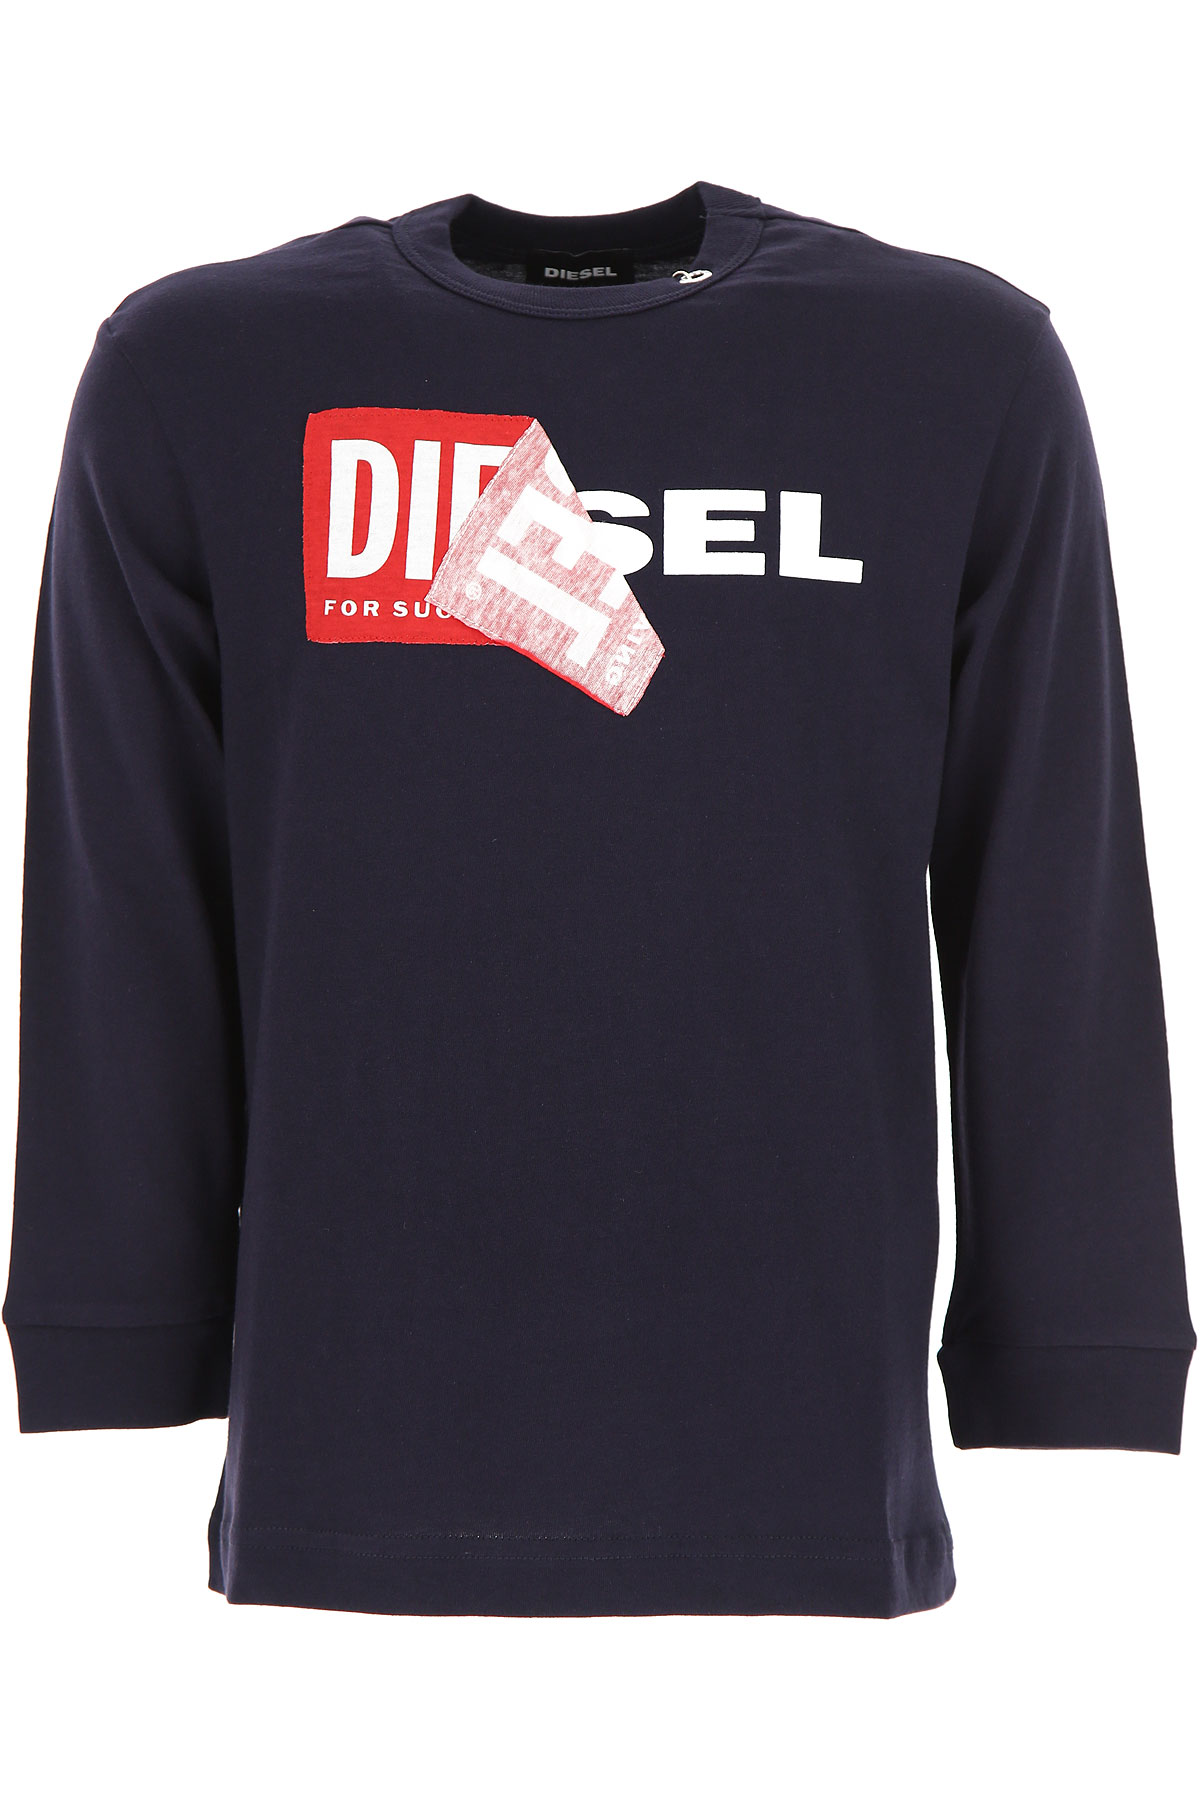 Diesel Kinder T-Shirt für Jungen Günstig im Sale, Blau, Baumwolle, 2017, 10Y 12Y 14Y 8Y